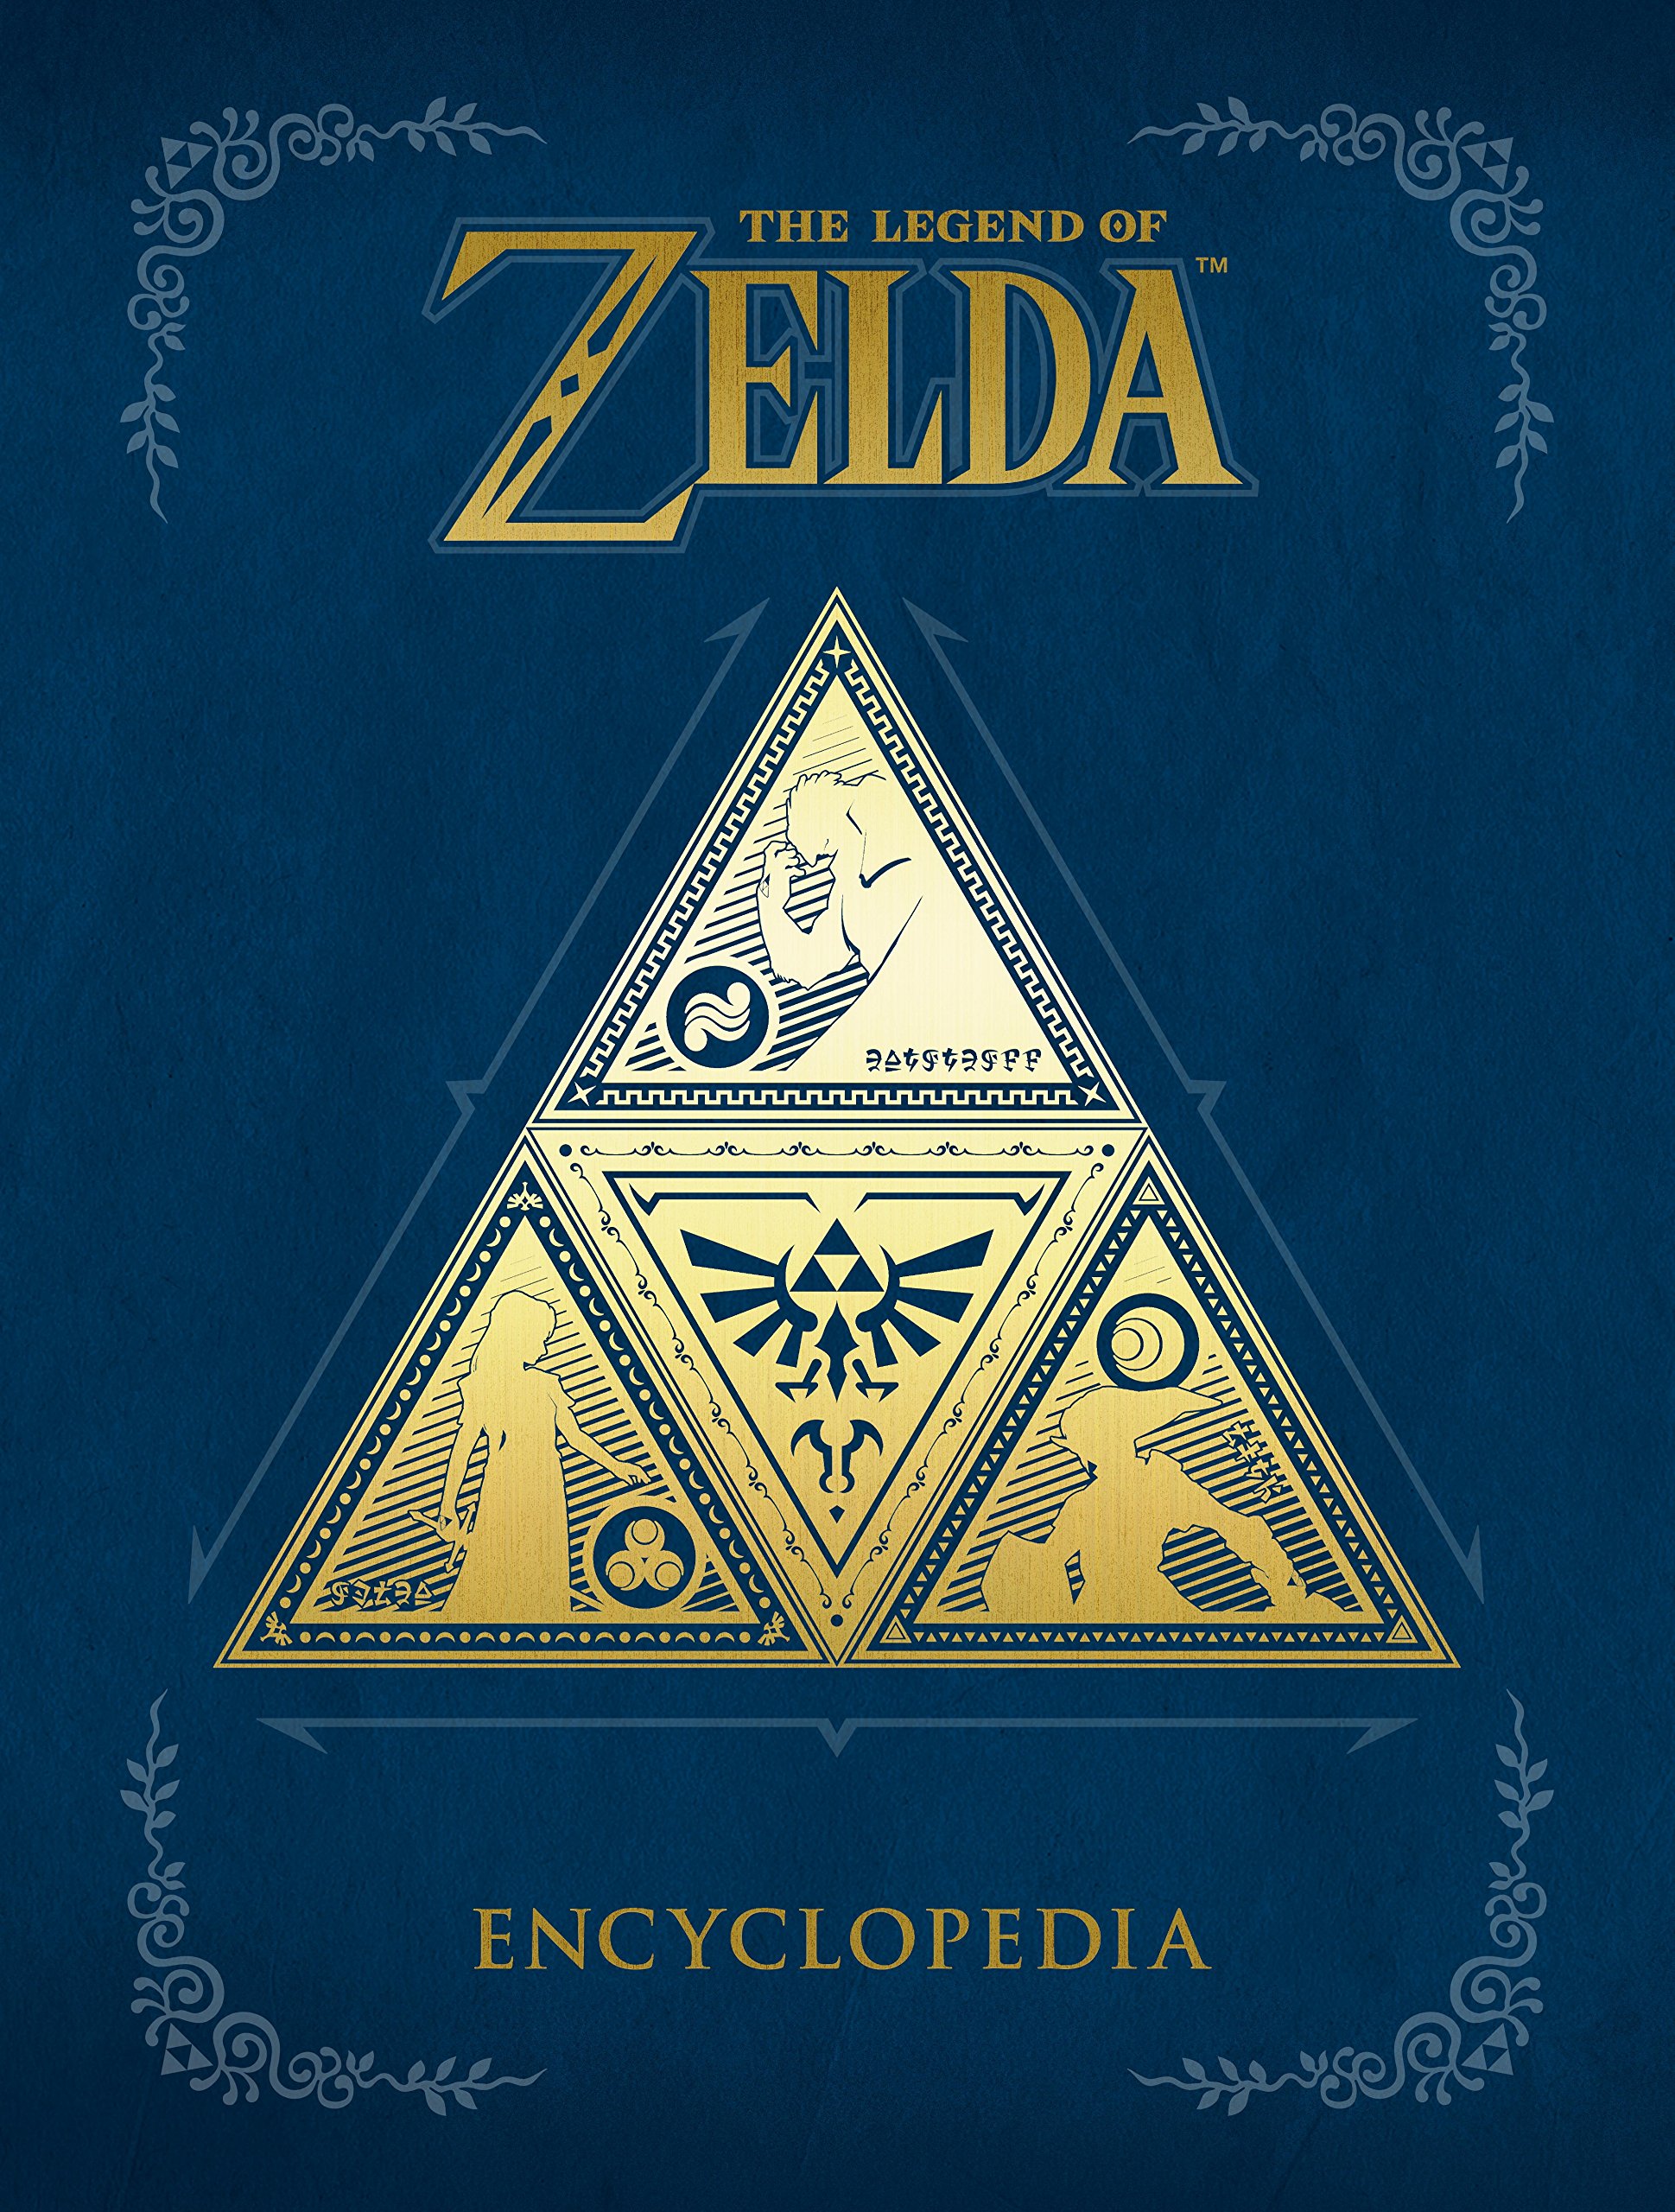 The Legend of Zelda Encyclopedia (Hardcover) $17.55 ~ Amazon